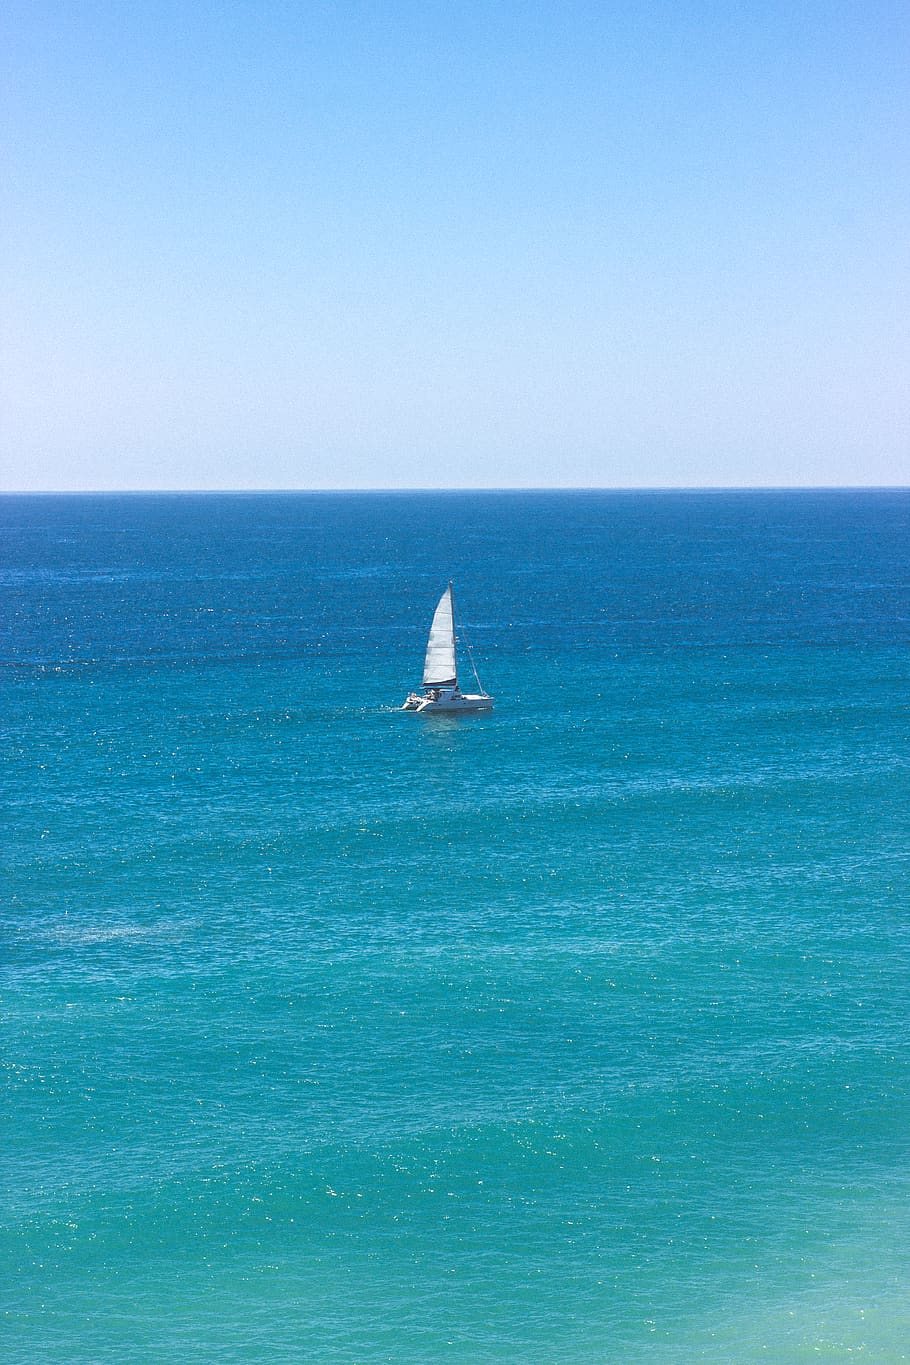 portugal, praia da marinha, boat, blue, sea, ocean, summer